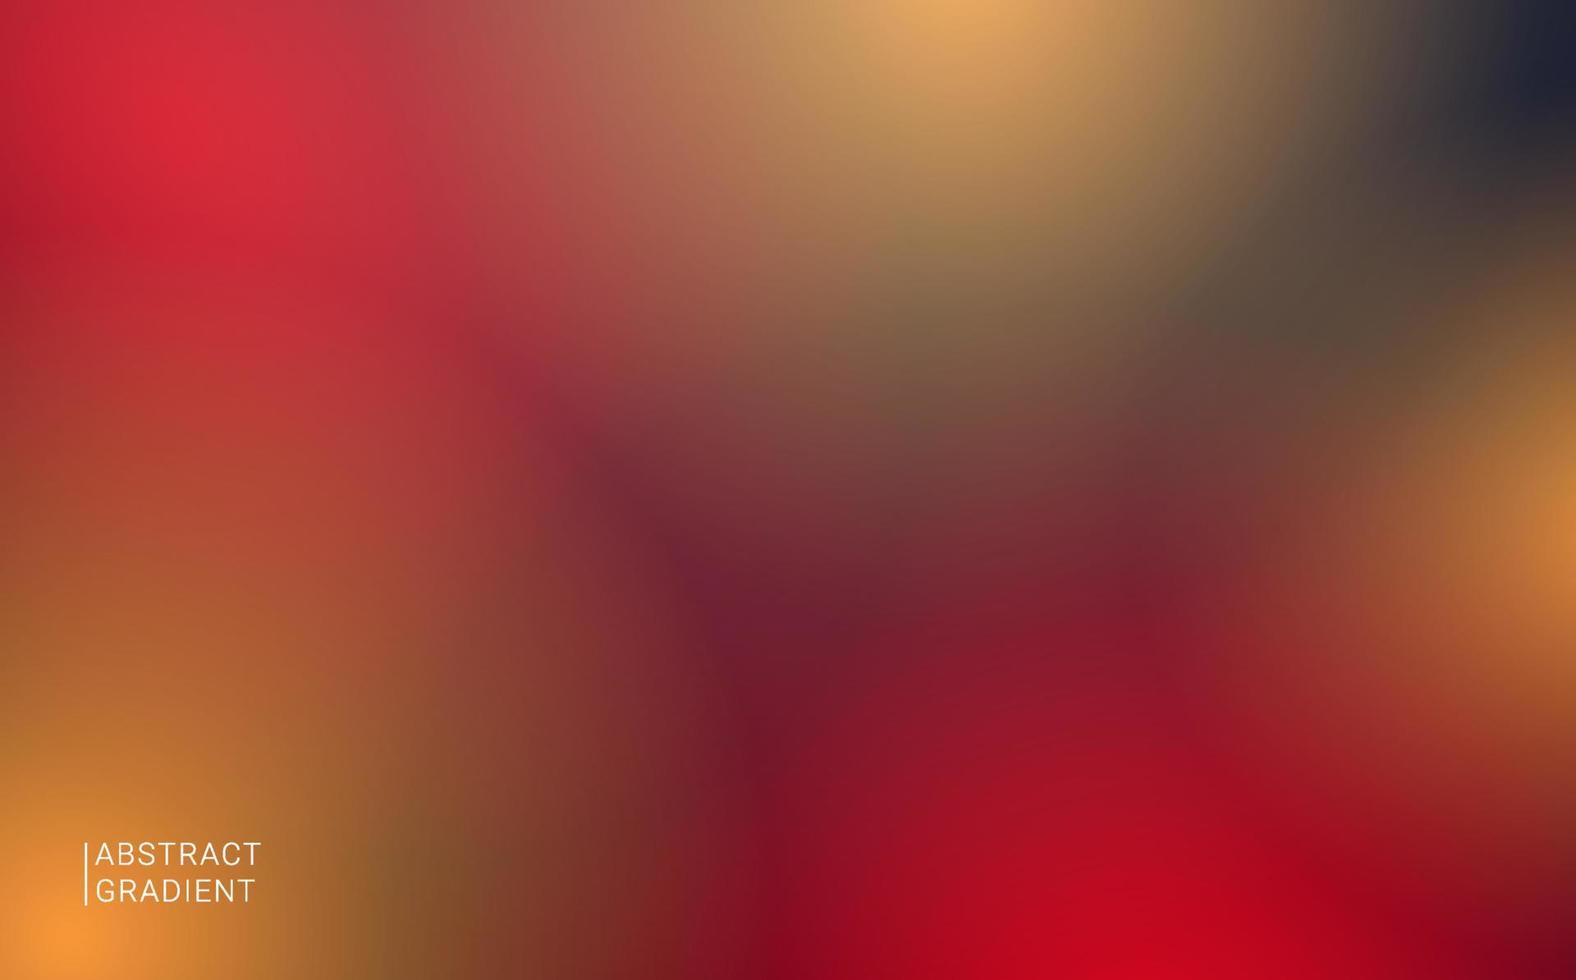 abstrakt suddig levande röd gul mjuk gradient bakgrundsdesign vektor